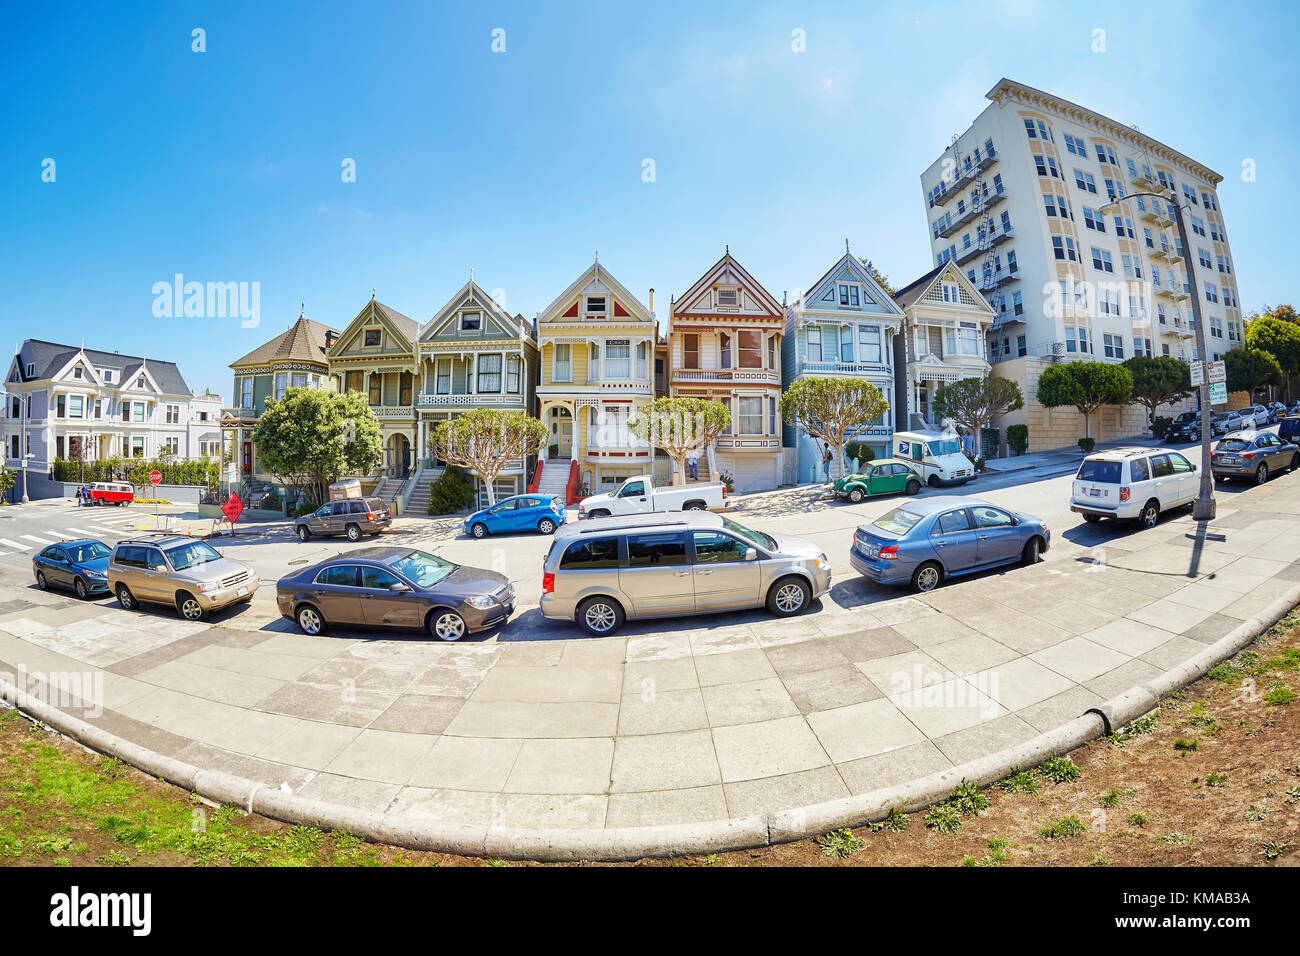 San Francisco, USA - 24. August 2015: Fischaugenobjektiv Bild der Painted Ladies Häuser, die von Steiner Straße an einem schönen Sommertag. Stockfoto